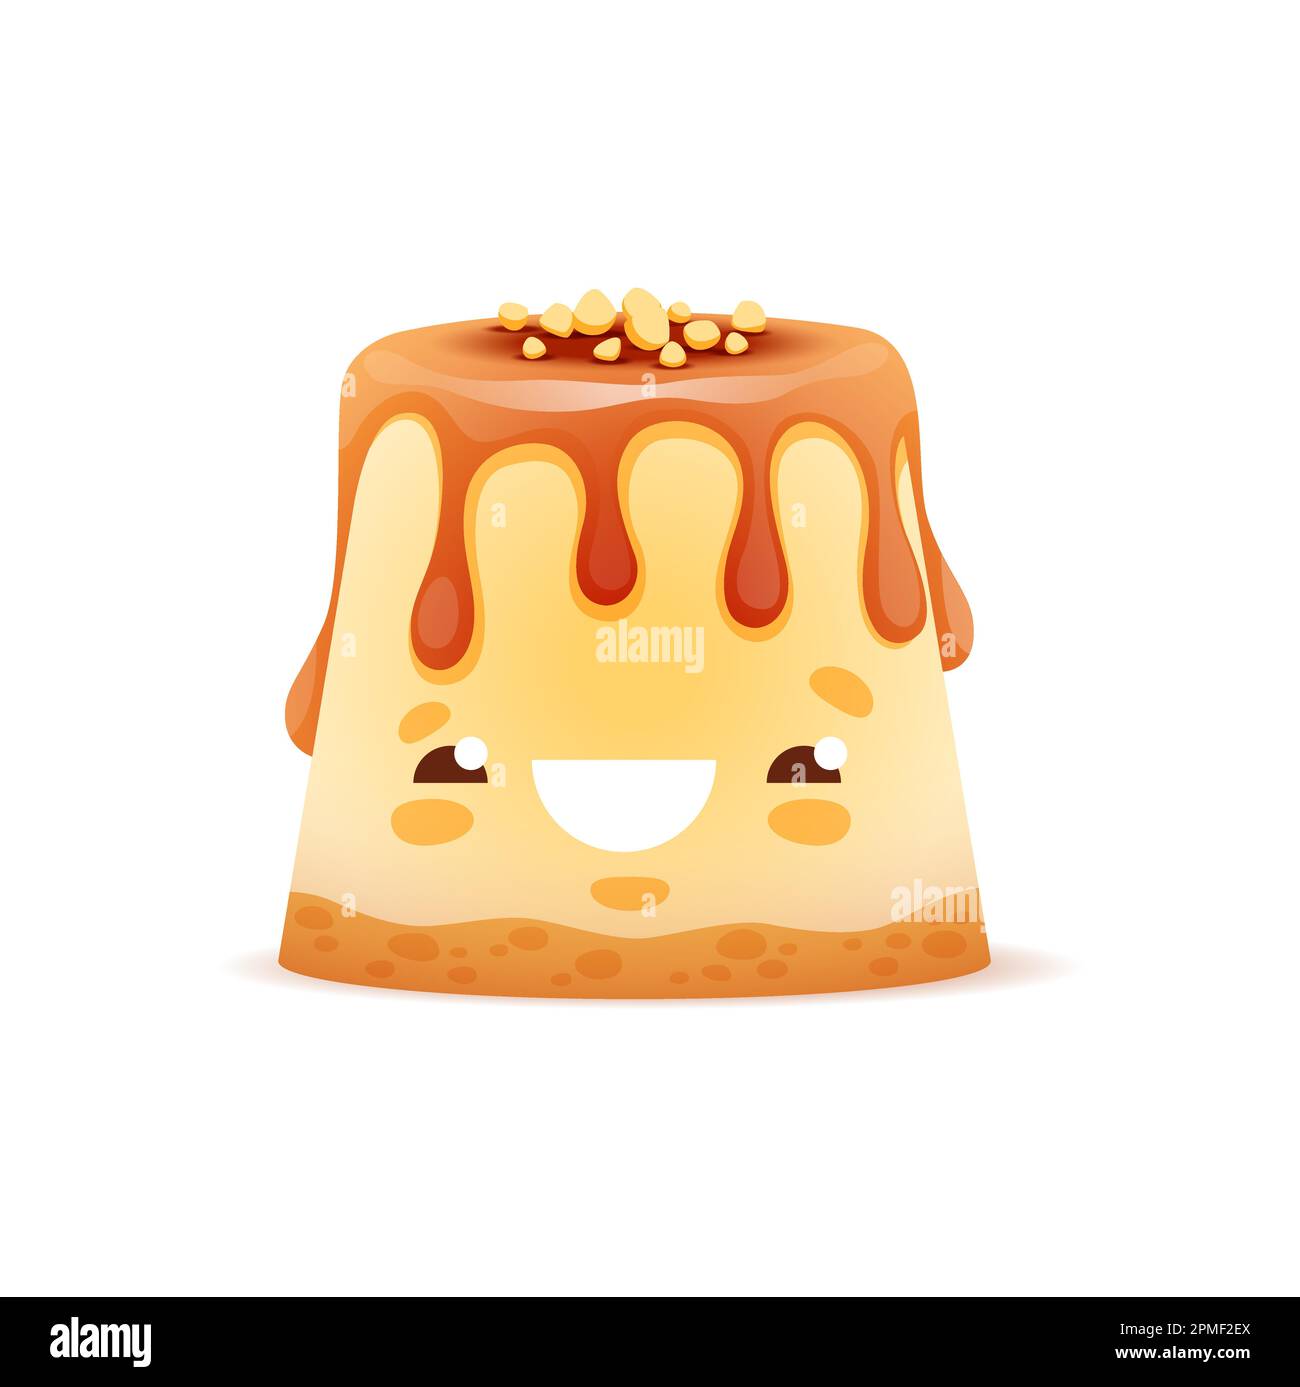 Cartoon-Kuchenfigur, Dessertessen, Gesicht Emoji oder Vektor leckeres Dessert. Lustiger süßer Kuchen, Käsekuchen oder Pudding mit Karamellsirup, Kinder lustiges Gebäck Stock Vektor